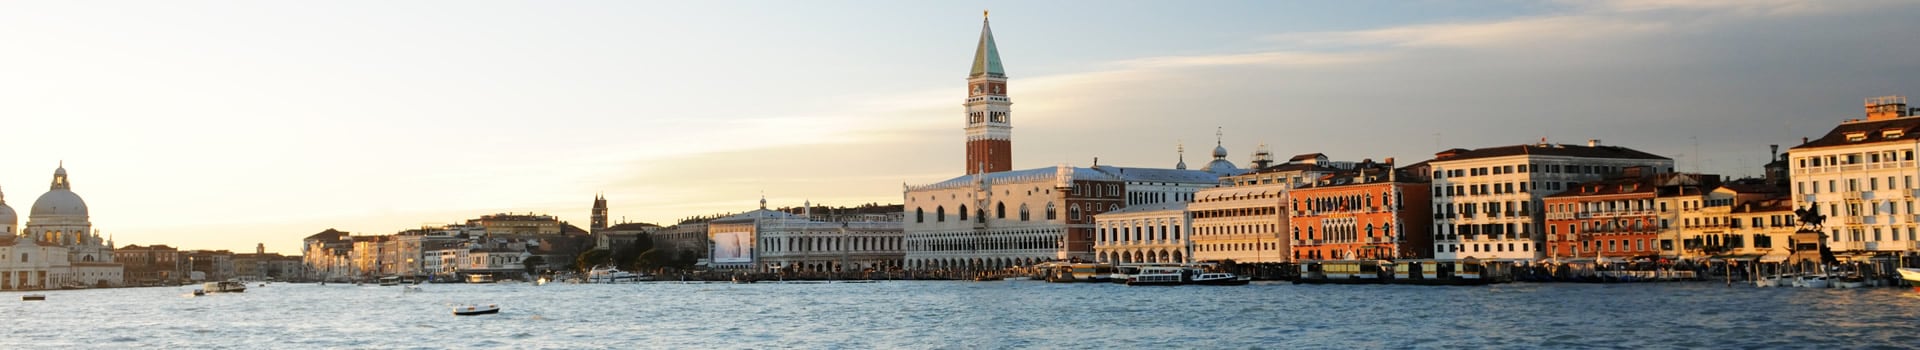 Billetes de Barco de Corfú a Venecia